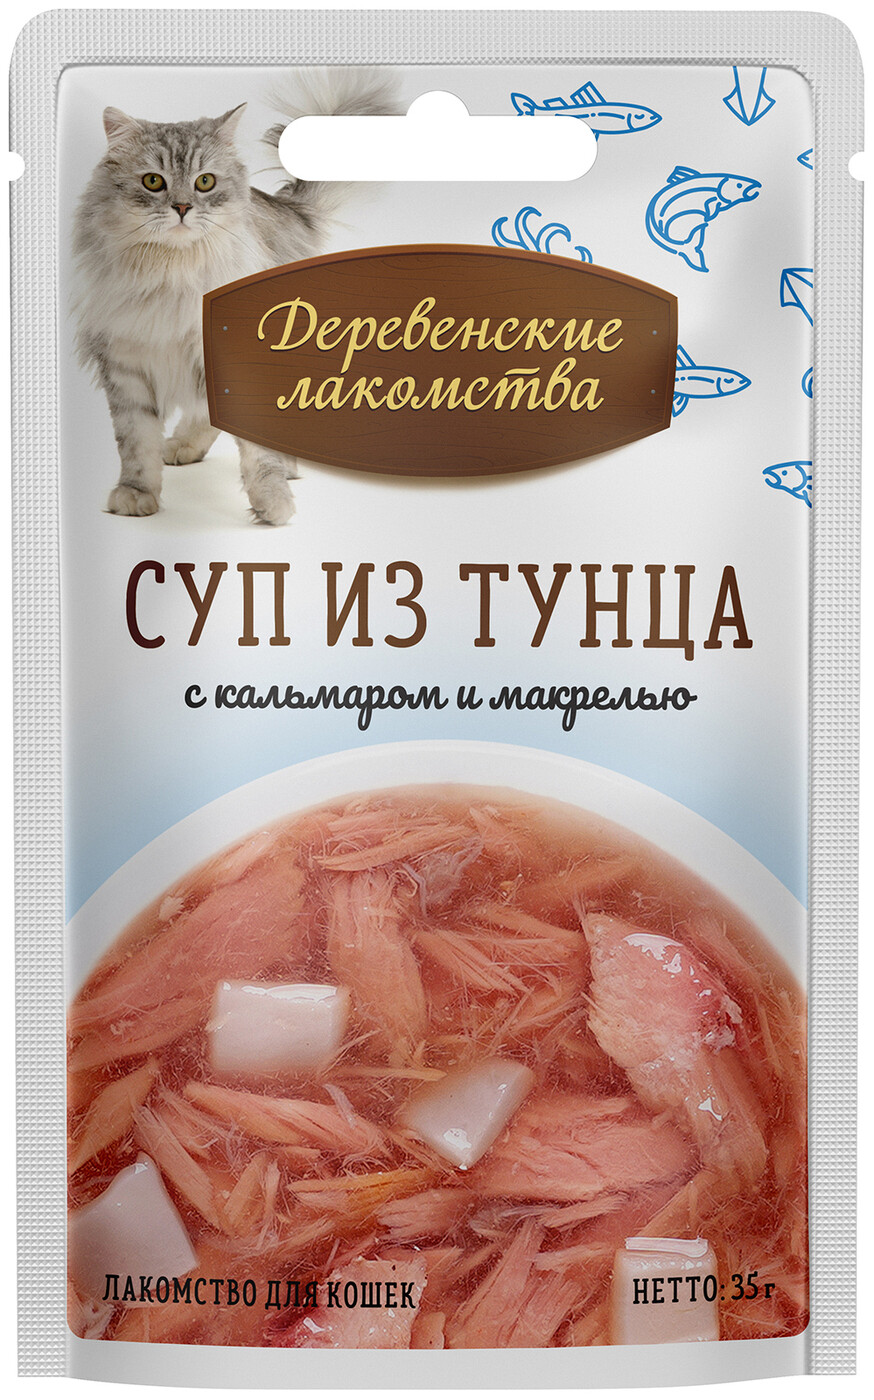 Деревенские лакомства для кошек Суп из тунца с кальмаром и макрелью 35г